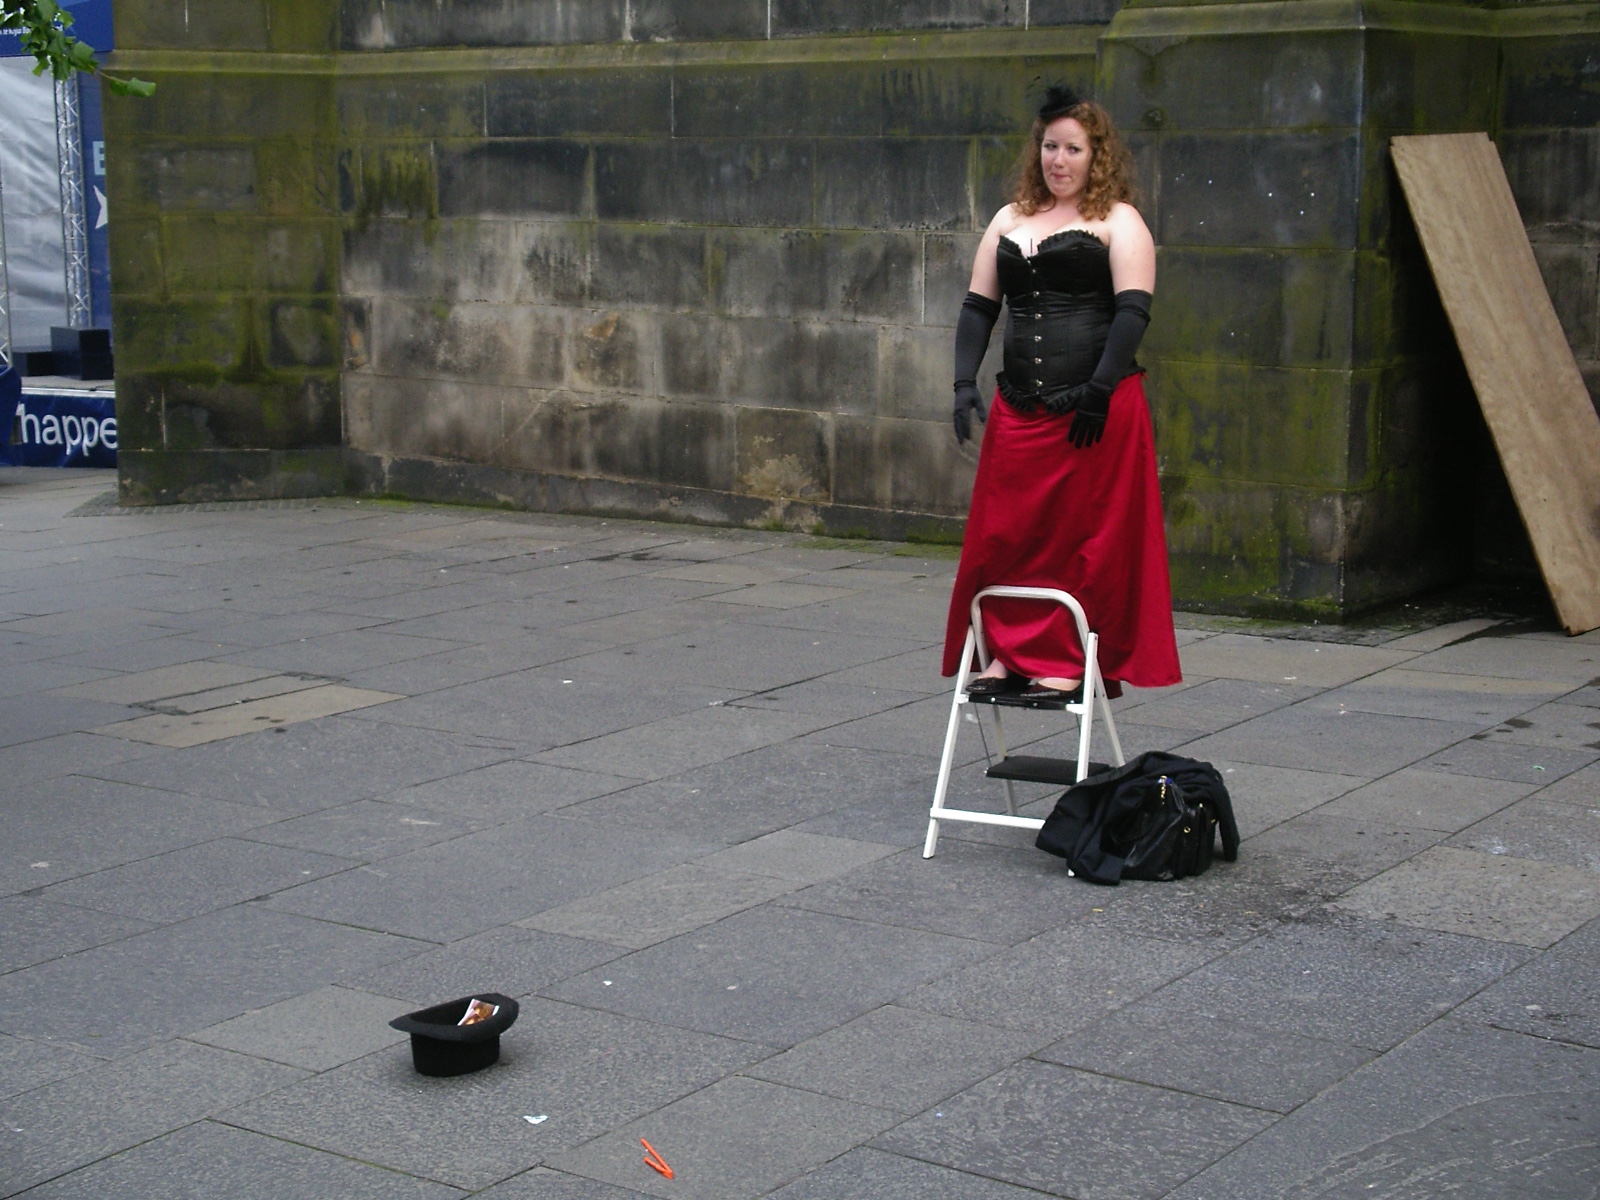 Opera singer on the street, Edinburgh, in Fringe Festival